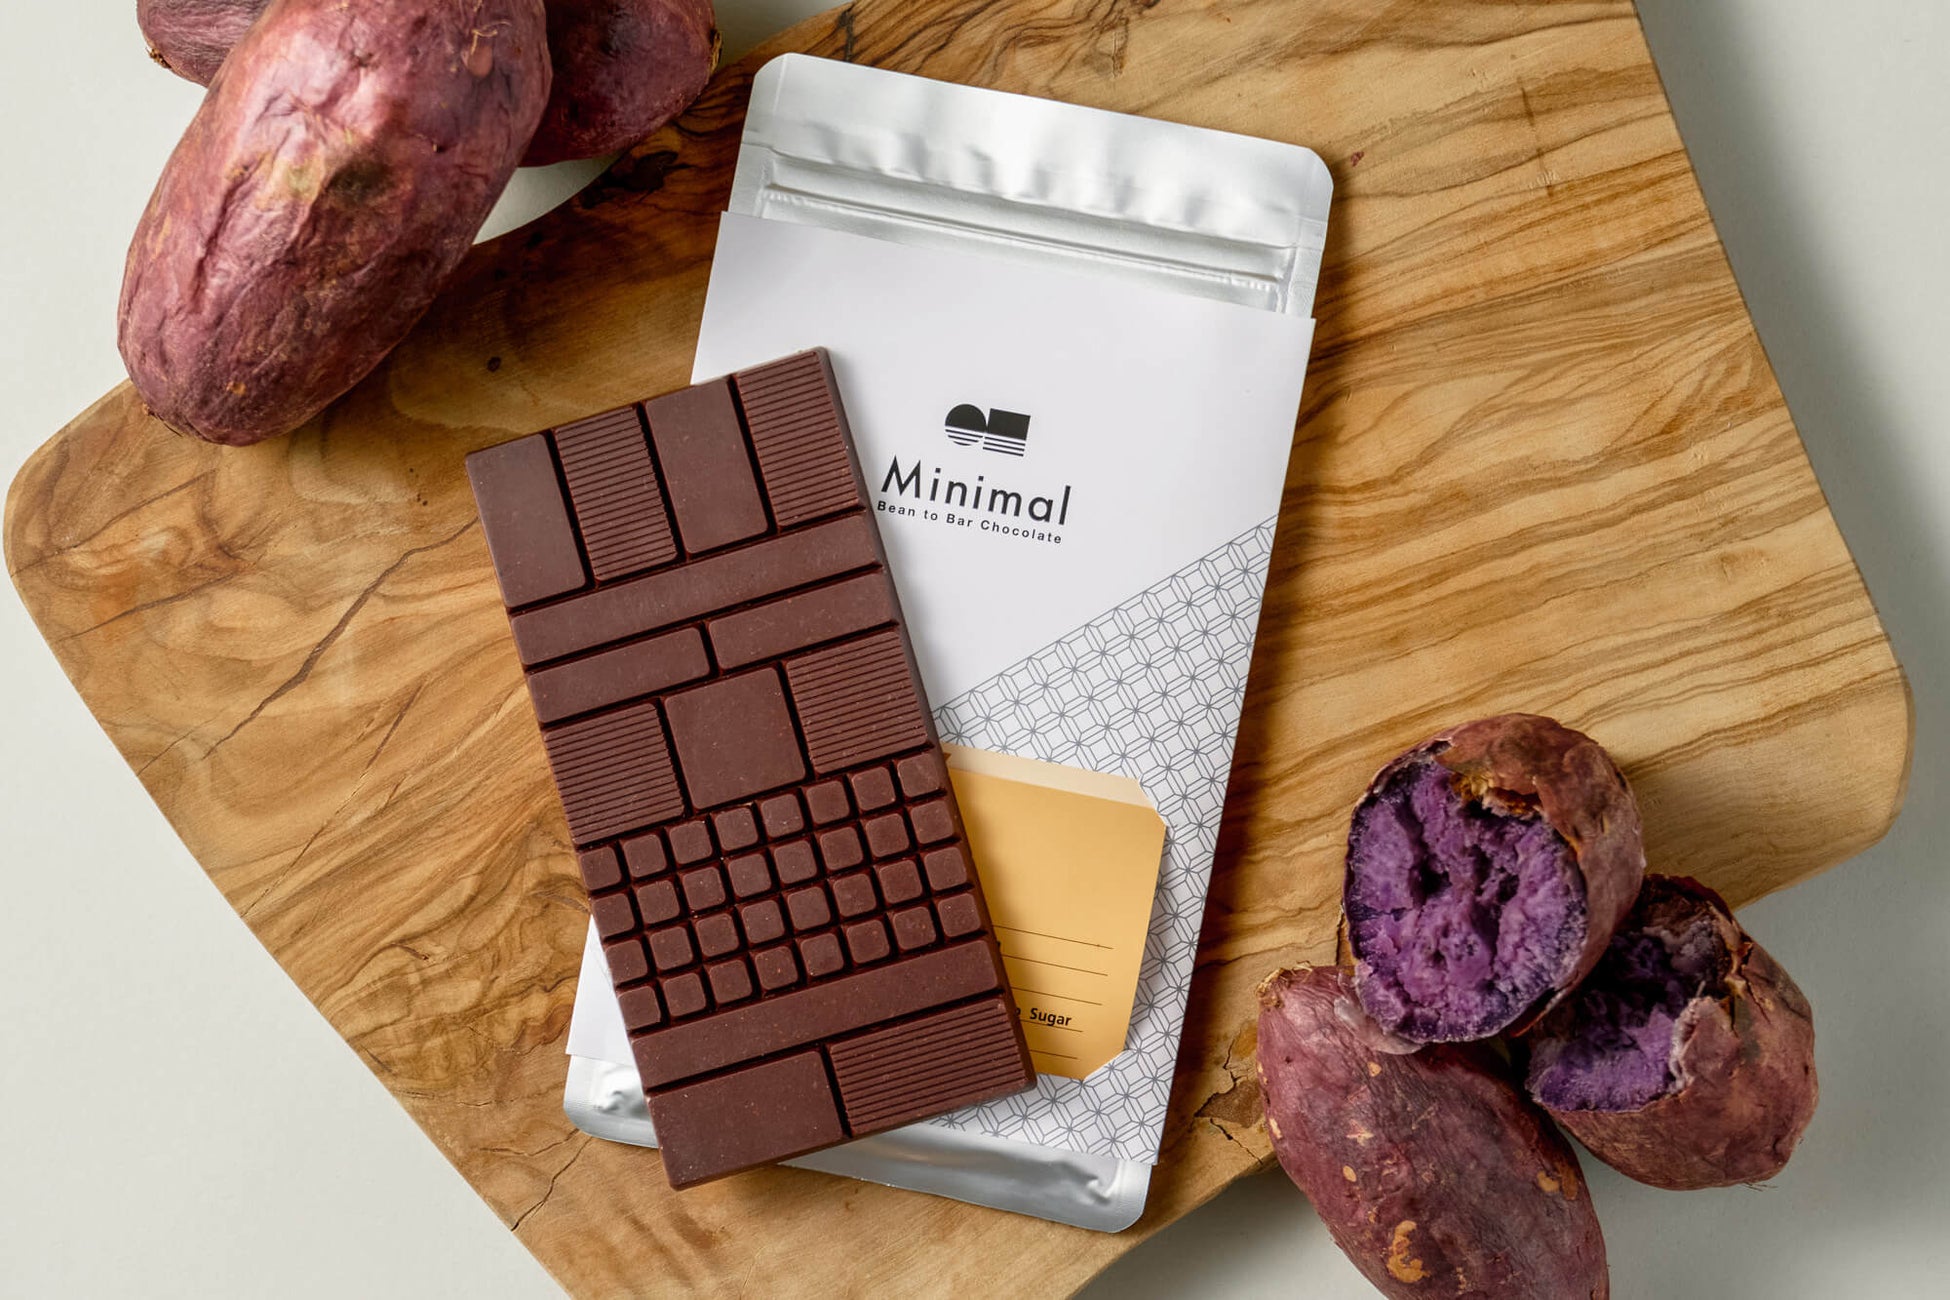 Minimalより秋限定フレーバーの板チョコレート登場。カカオと砂糖のみで表現した、さつまいものようなこっくりとした味わい。「SEASONAL ニカラグア60%」10月1日発売